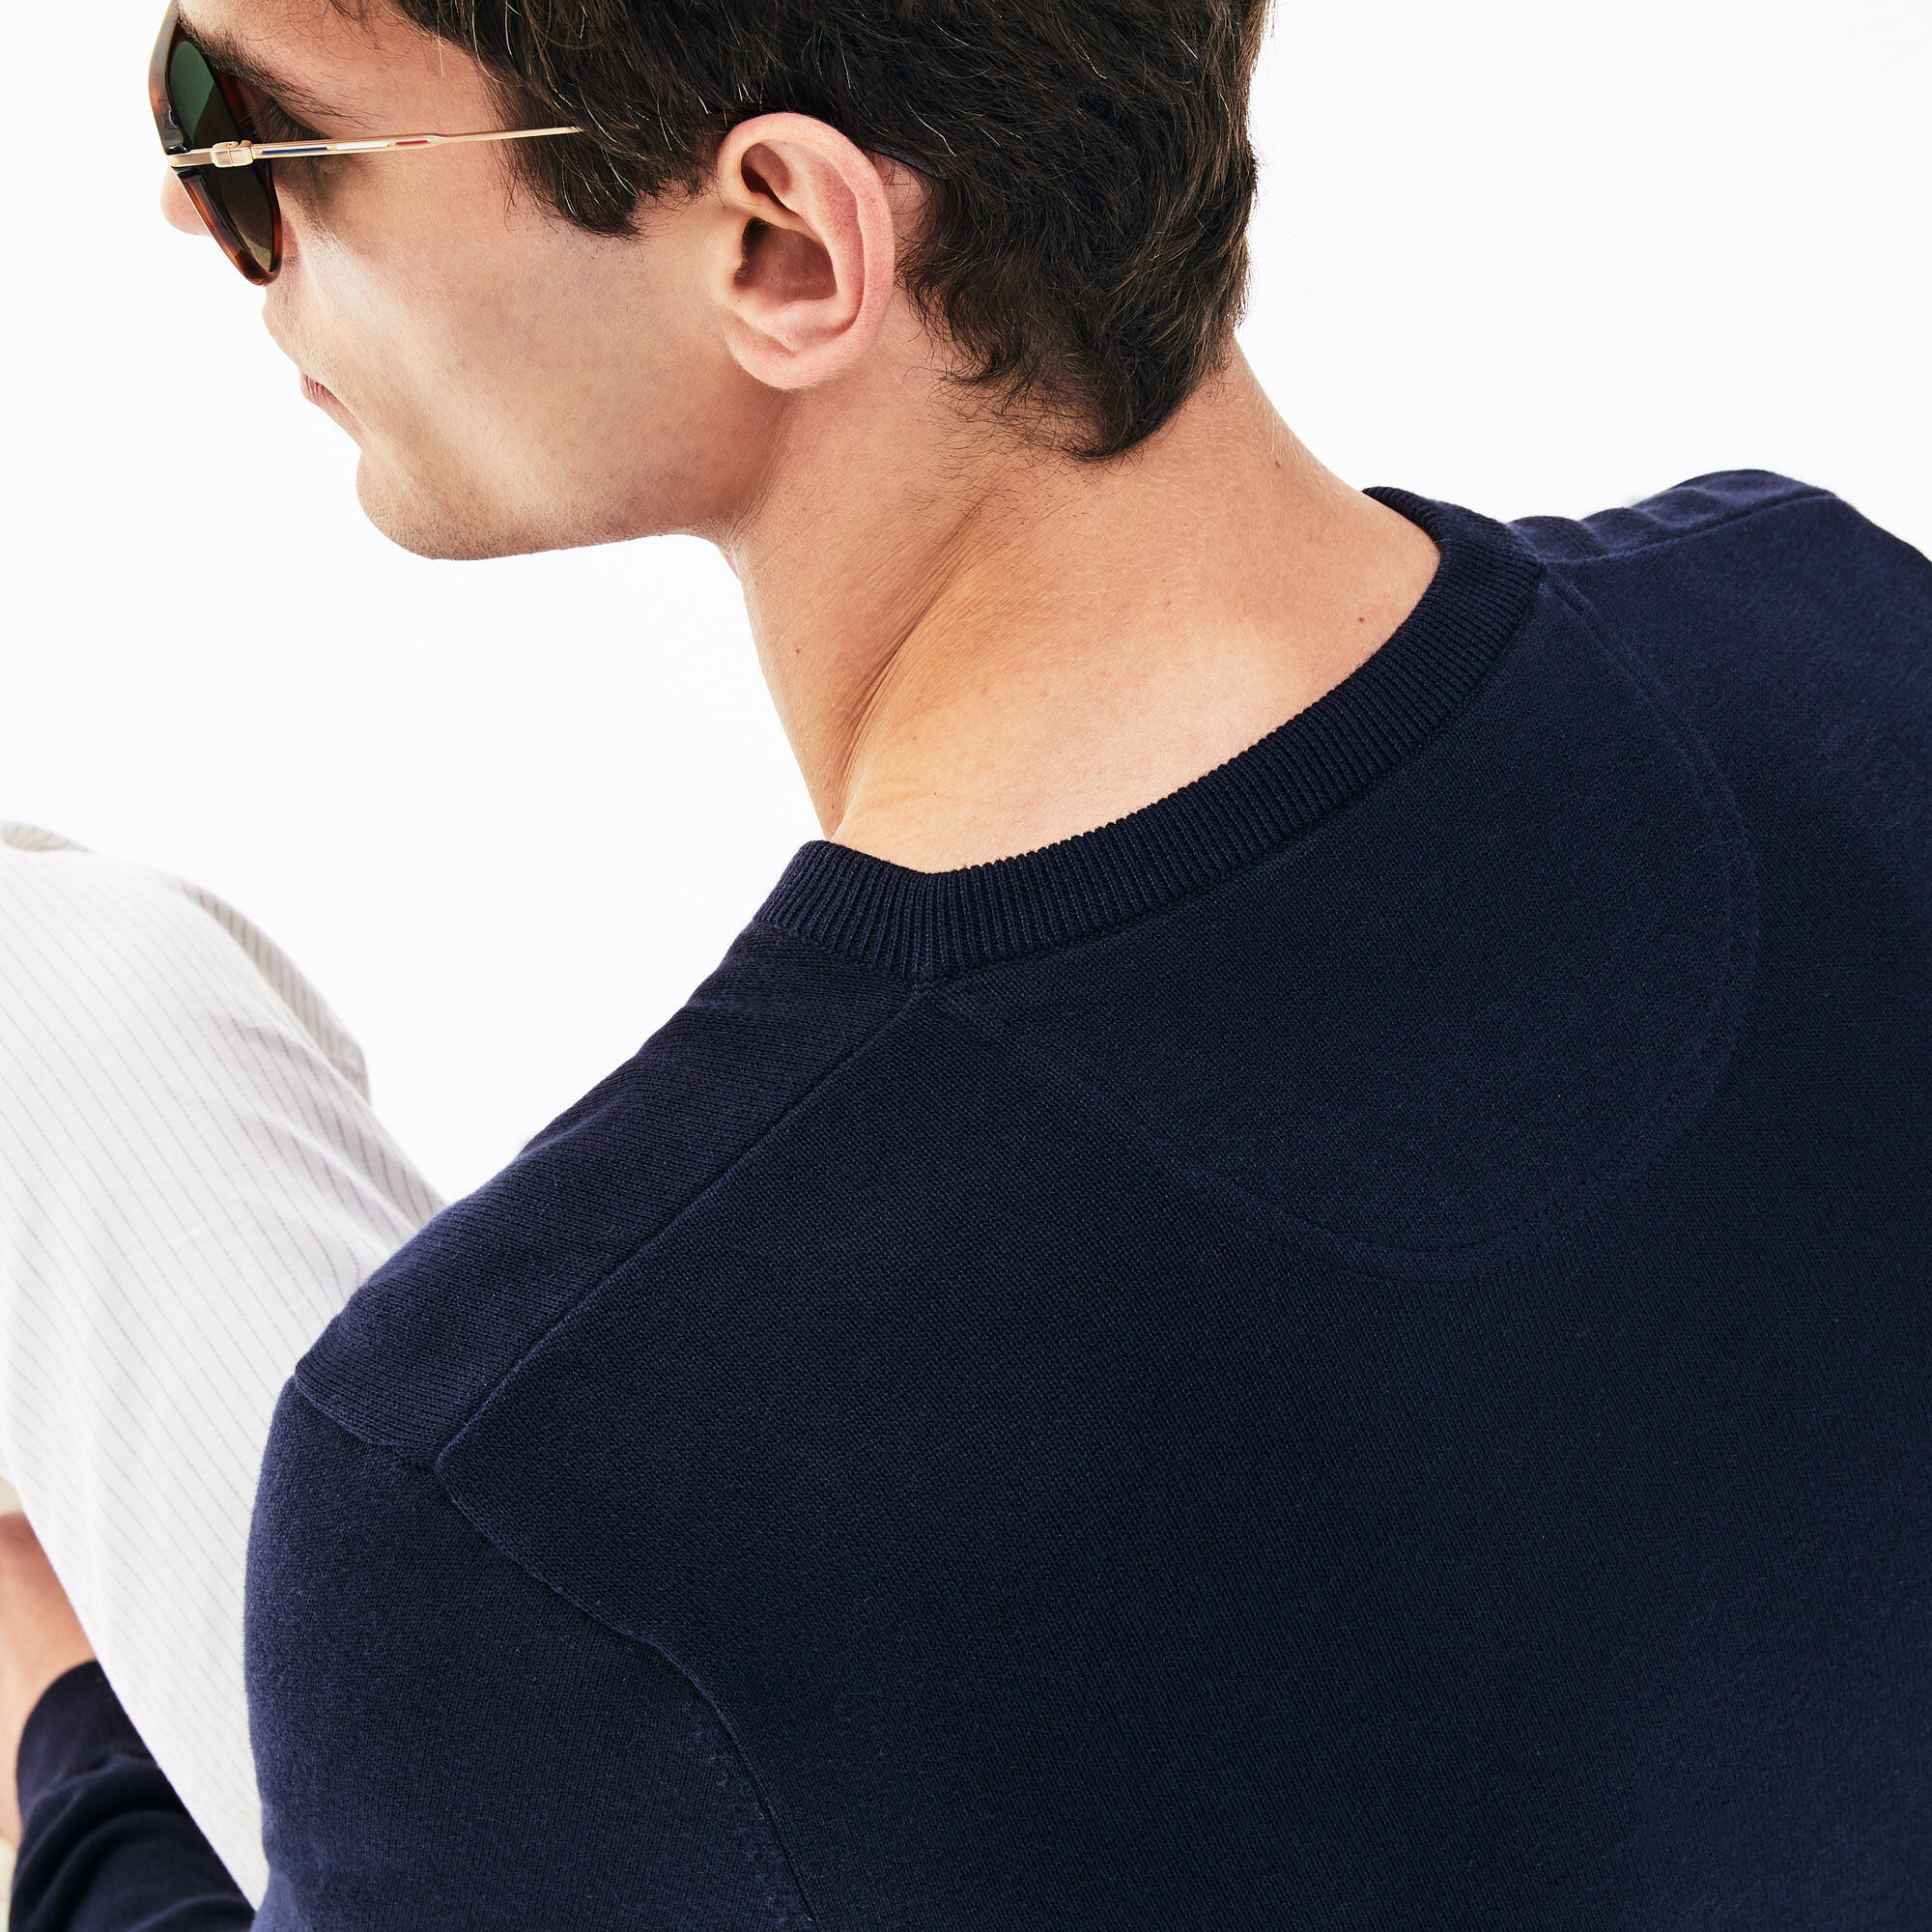 Men's V-neck Caviar Piqué Accent Cotton Jersey Sweater